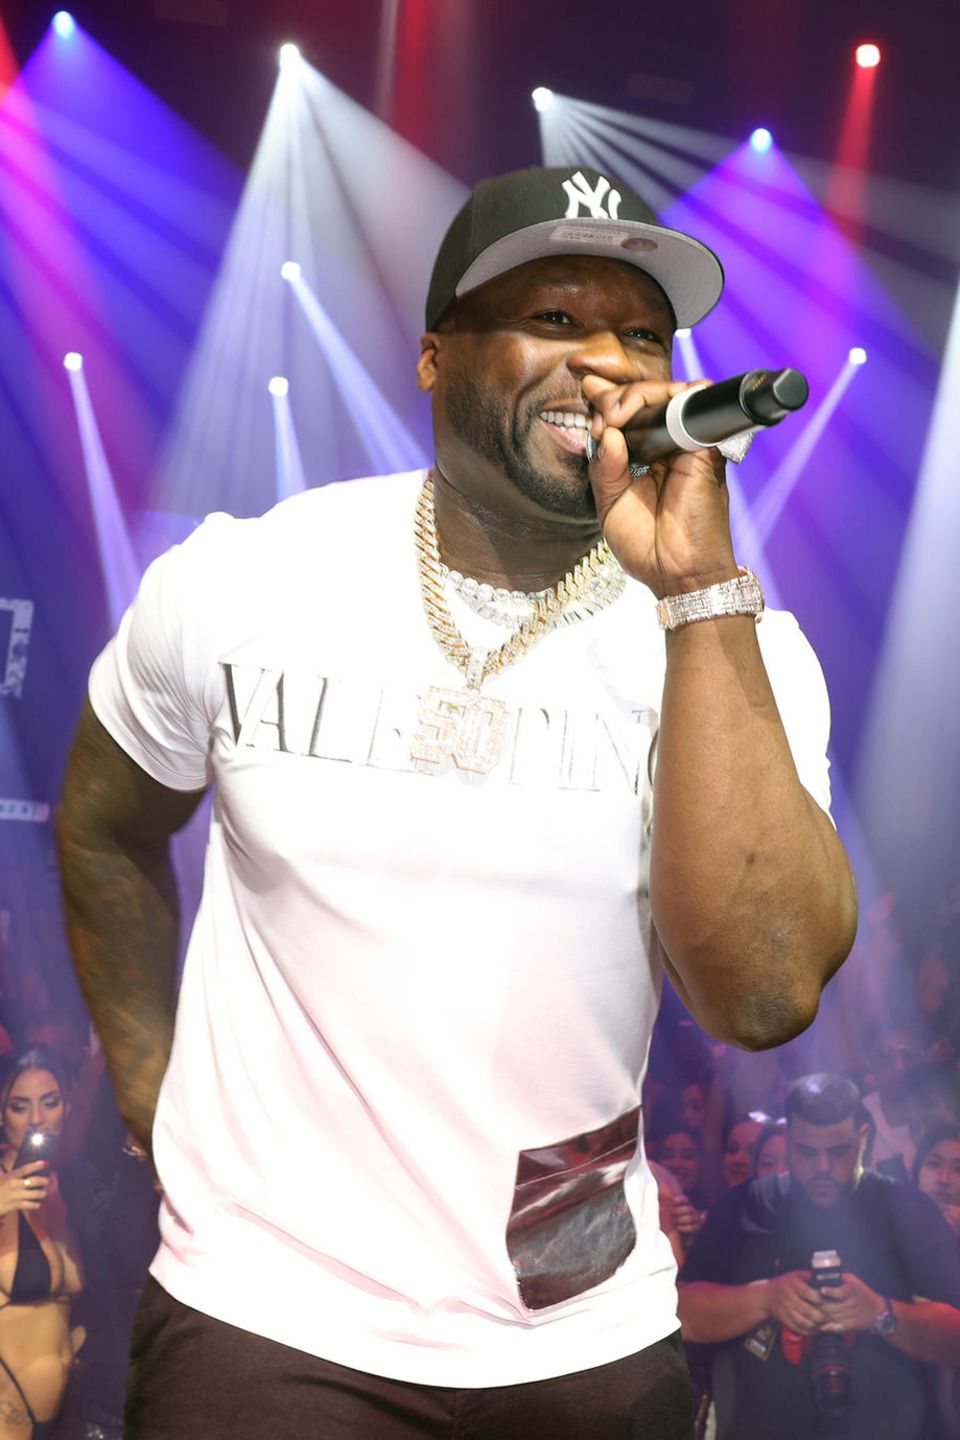 Rapper 50 Cent sing bei einem Auftritt auf der Bühne